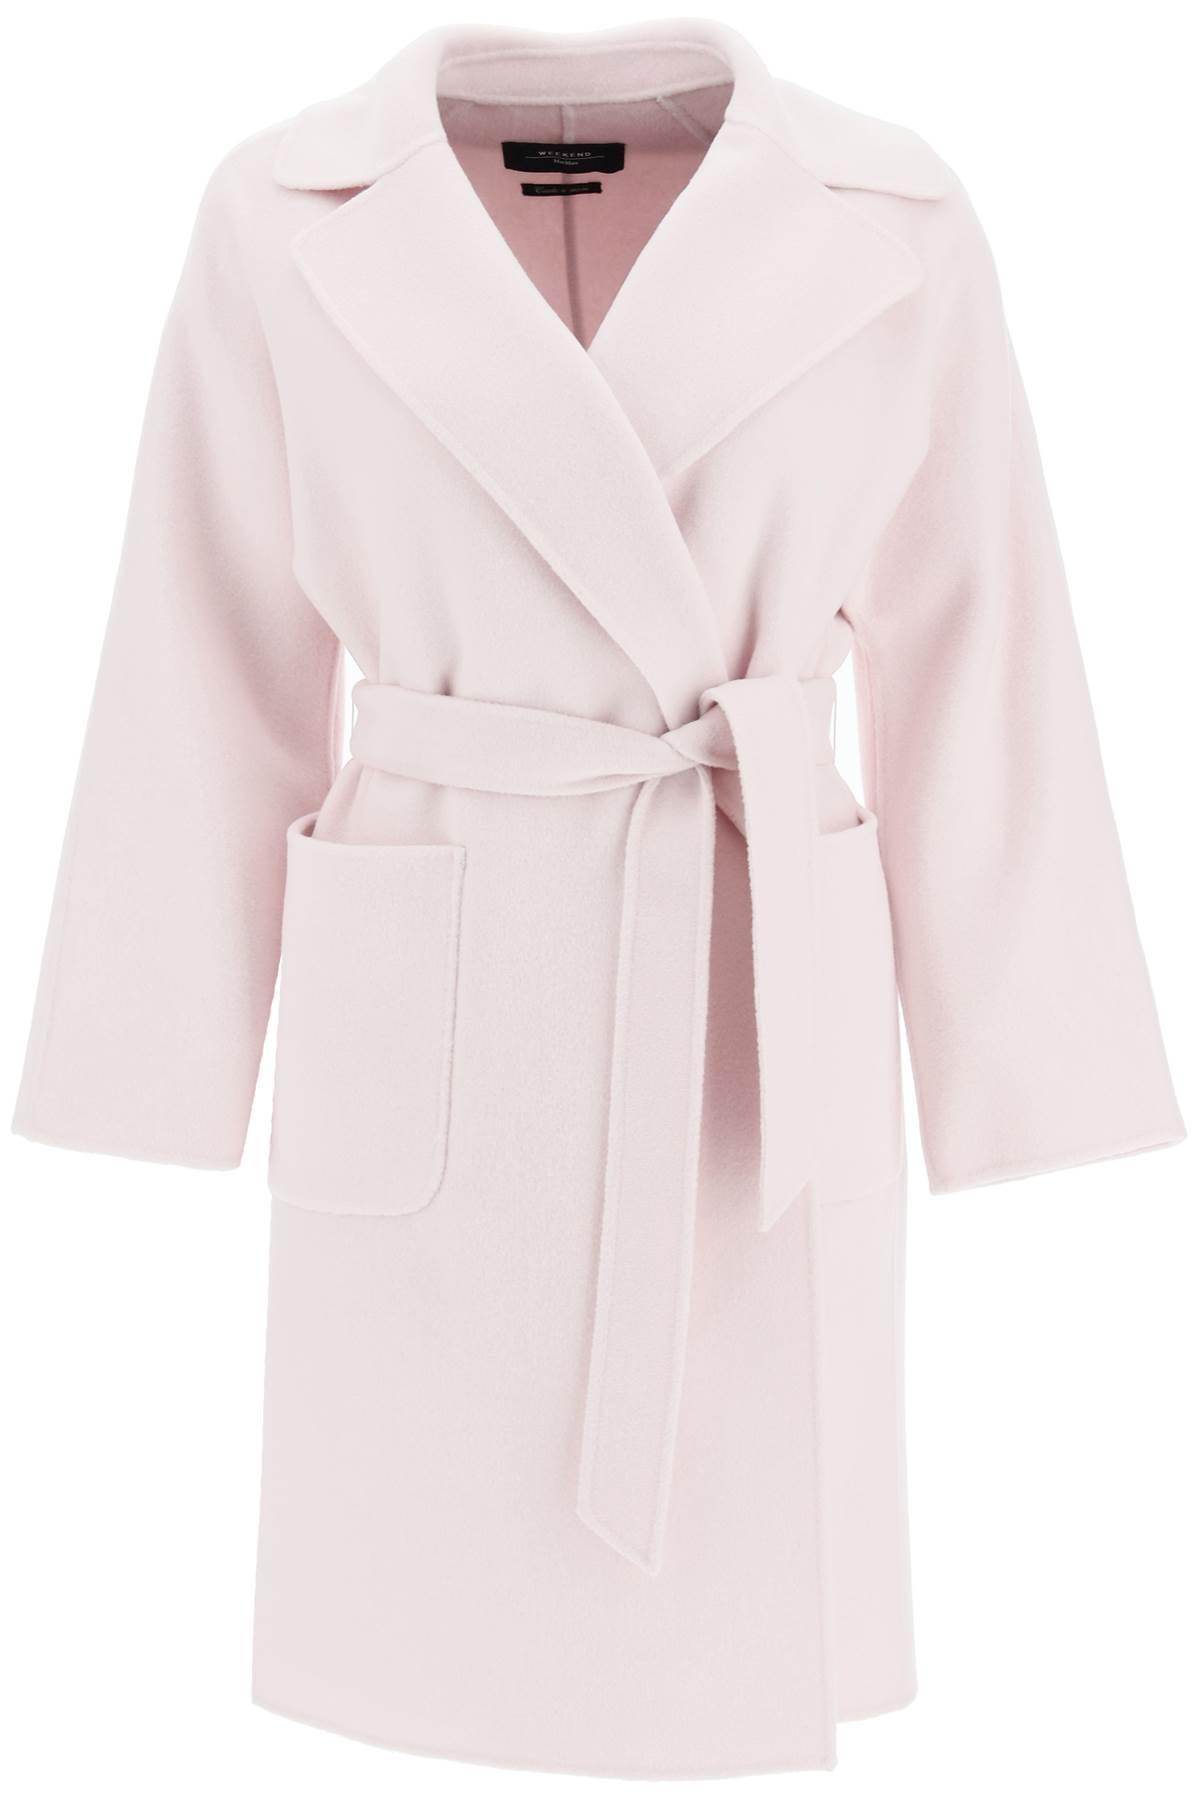 Weekend by Maxmara Rovo Wool Coat in Pink | Lyst